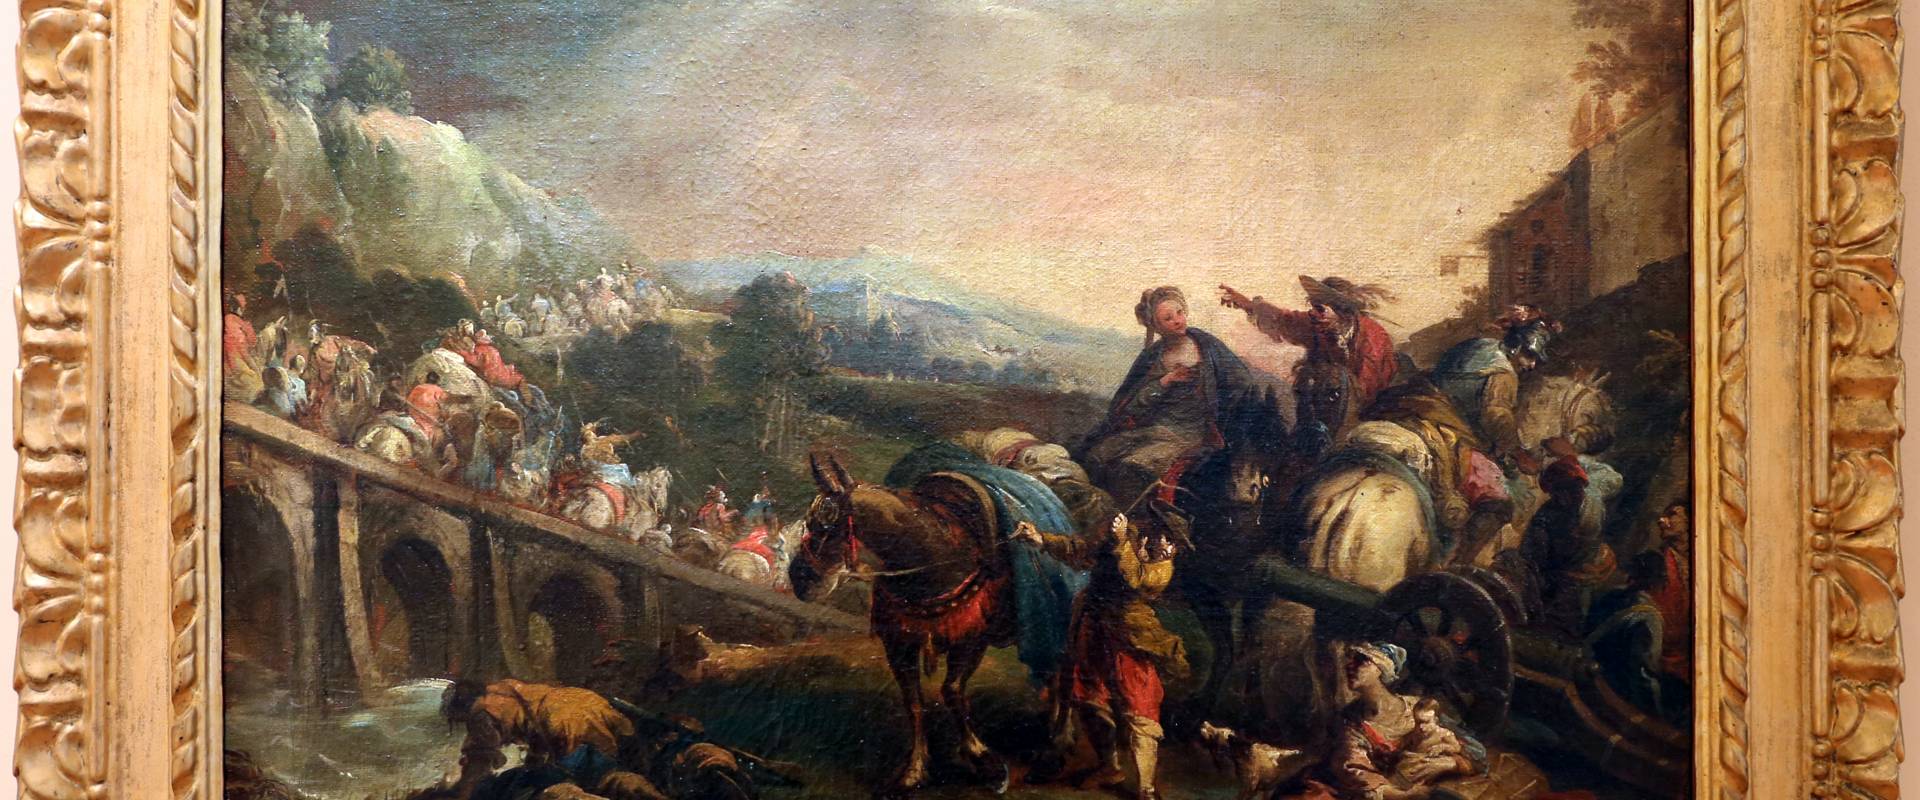 Nicola bertuzzi, passaggio di un esercito sopra un ponte, 1750-70 ca foto di Sailko